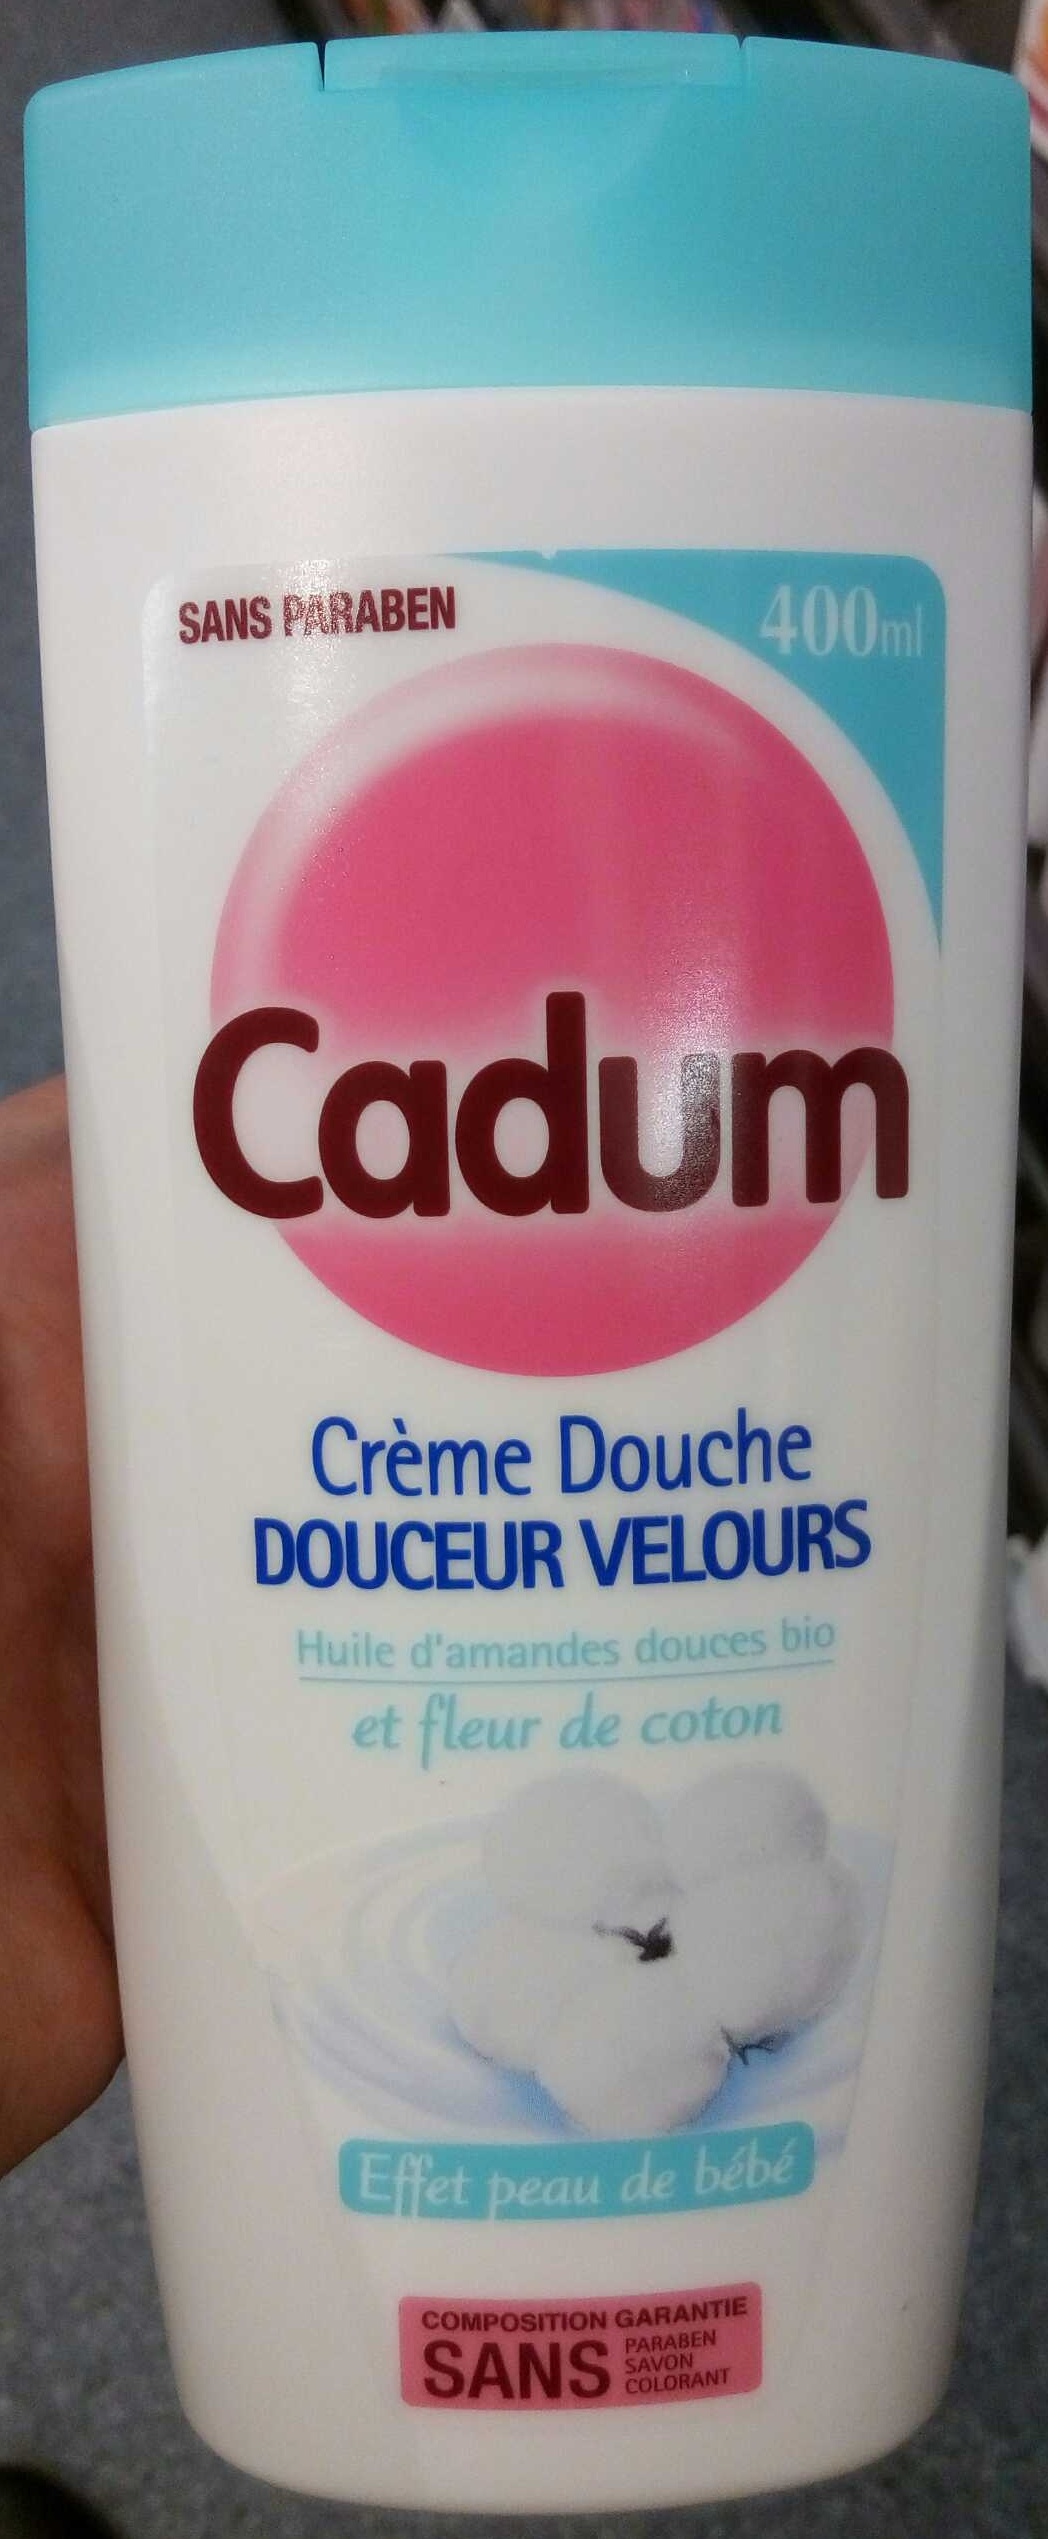 Crème Douche Douceur Velours - Product - fr